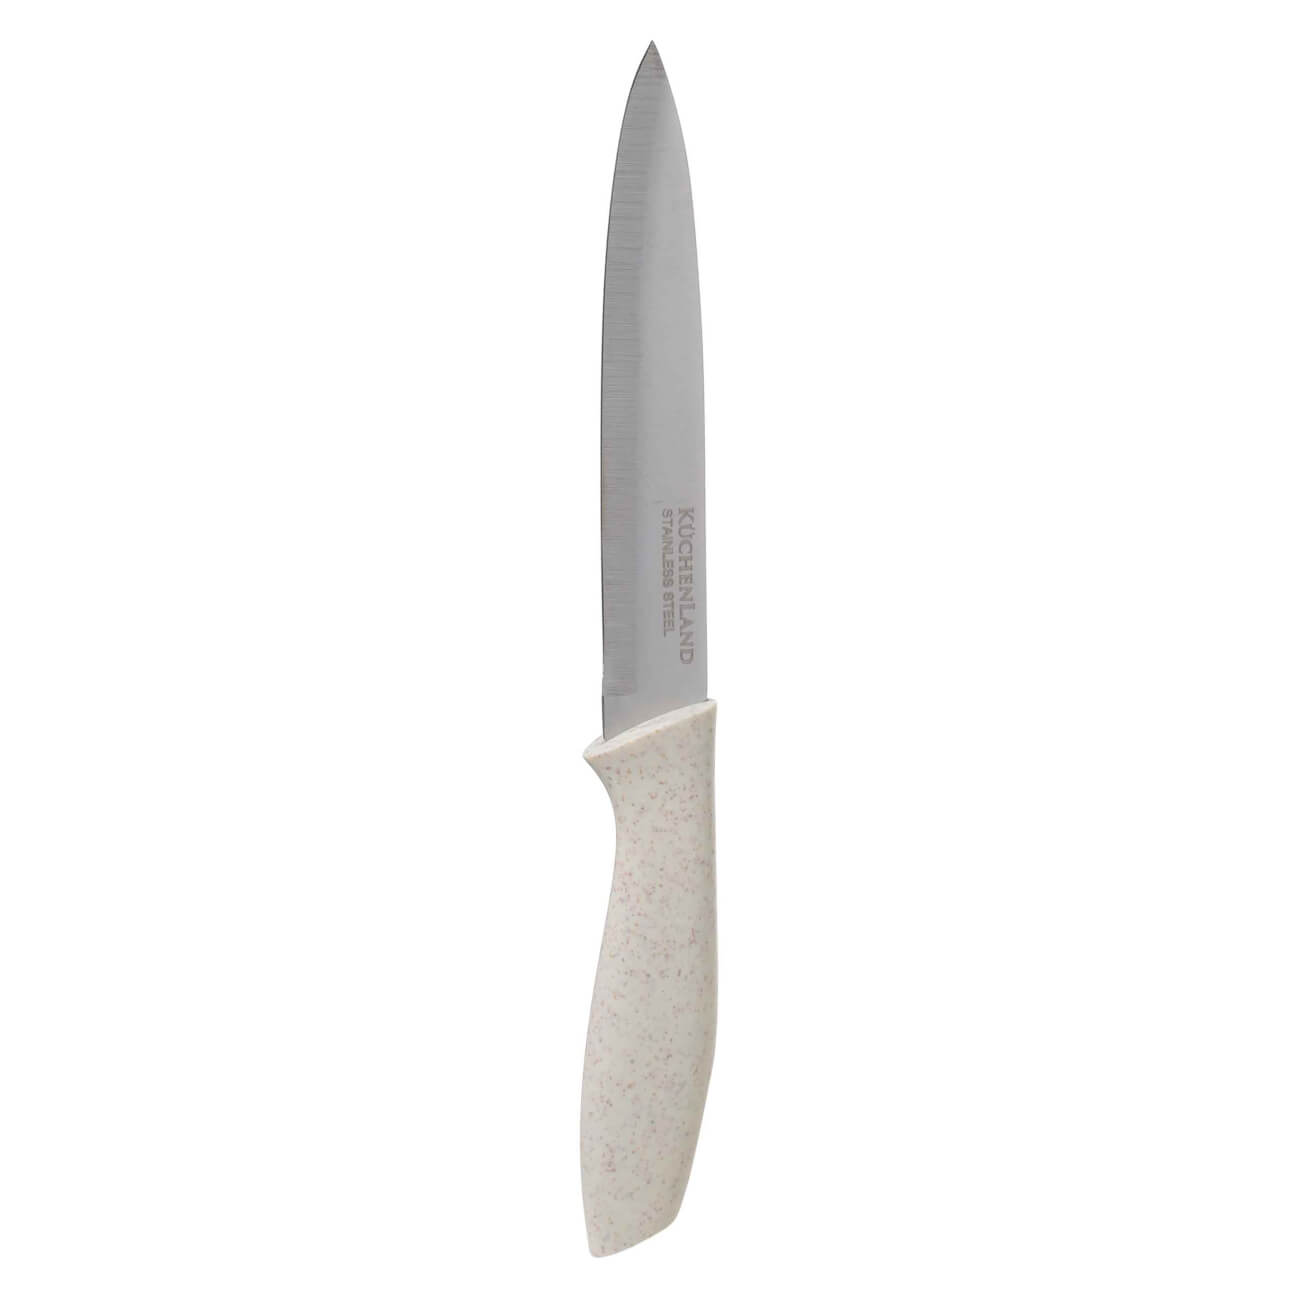 Нож для нарезки, 13 см, сталь/пластик, молочный, Speck-light набор для выпечки 3 пр скалка венчик щипцы силикон сталь молочный bakery